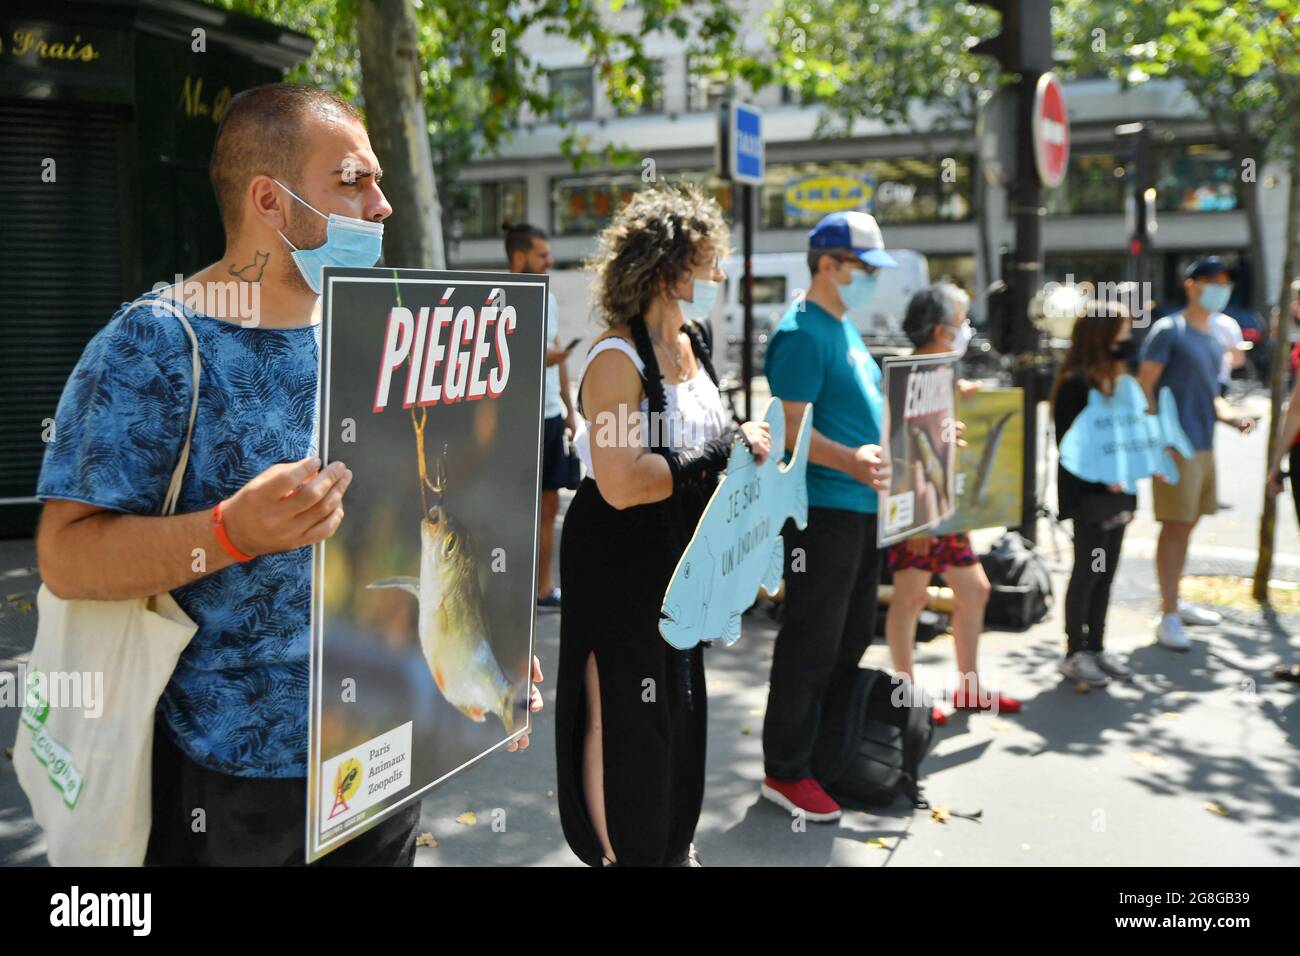 Les partisans de Paris Animaux Zoopolis (PAZ) protestent contre la pêche  vivante à l'extérieur du magasin de Decathlon à Paris, France, le 20  juillet 2021. Photo par Karim ait Adjedjou/avenir Pictures/ABACAPRESS.COM  Photo